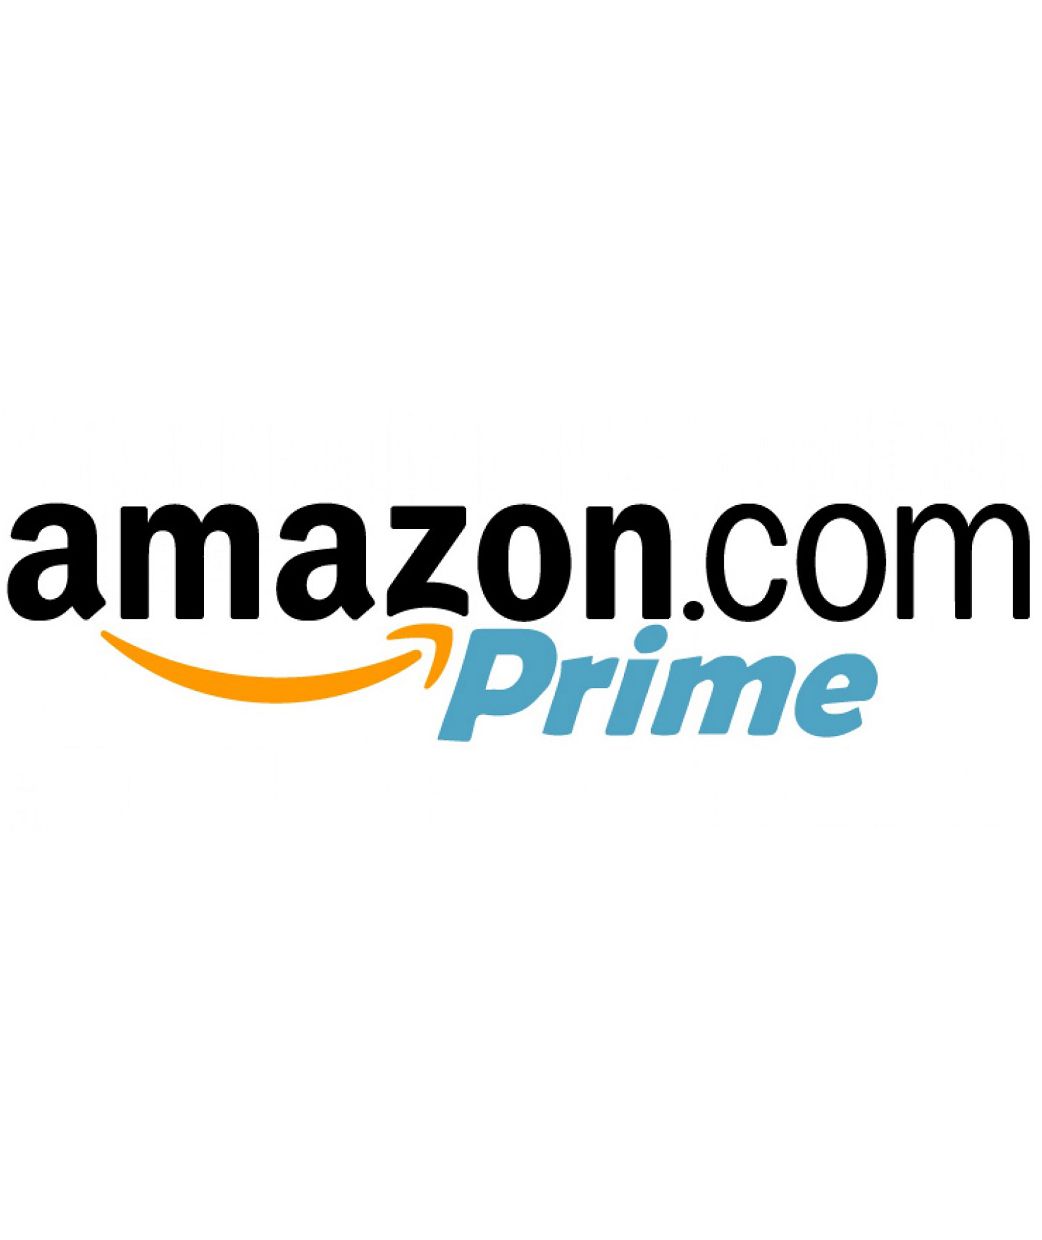 Is e seo a h-uile dad a bha mòr air Amazon Prime ann an 2017